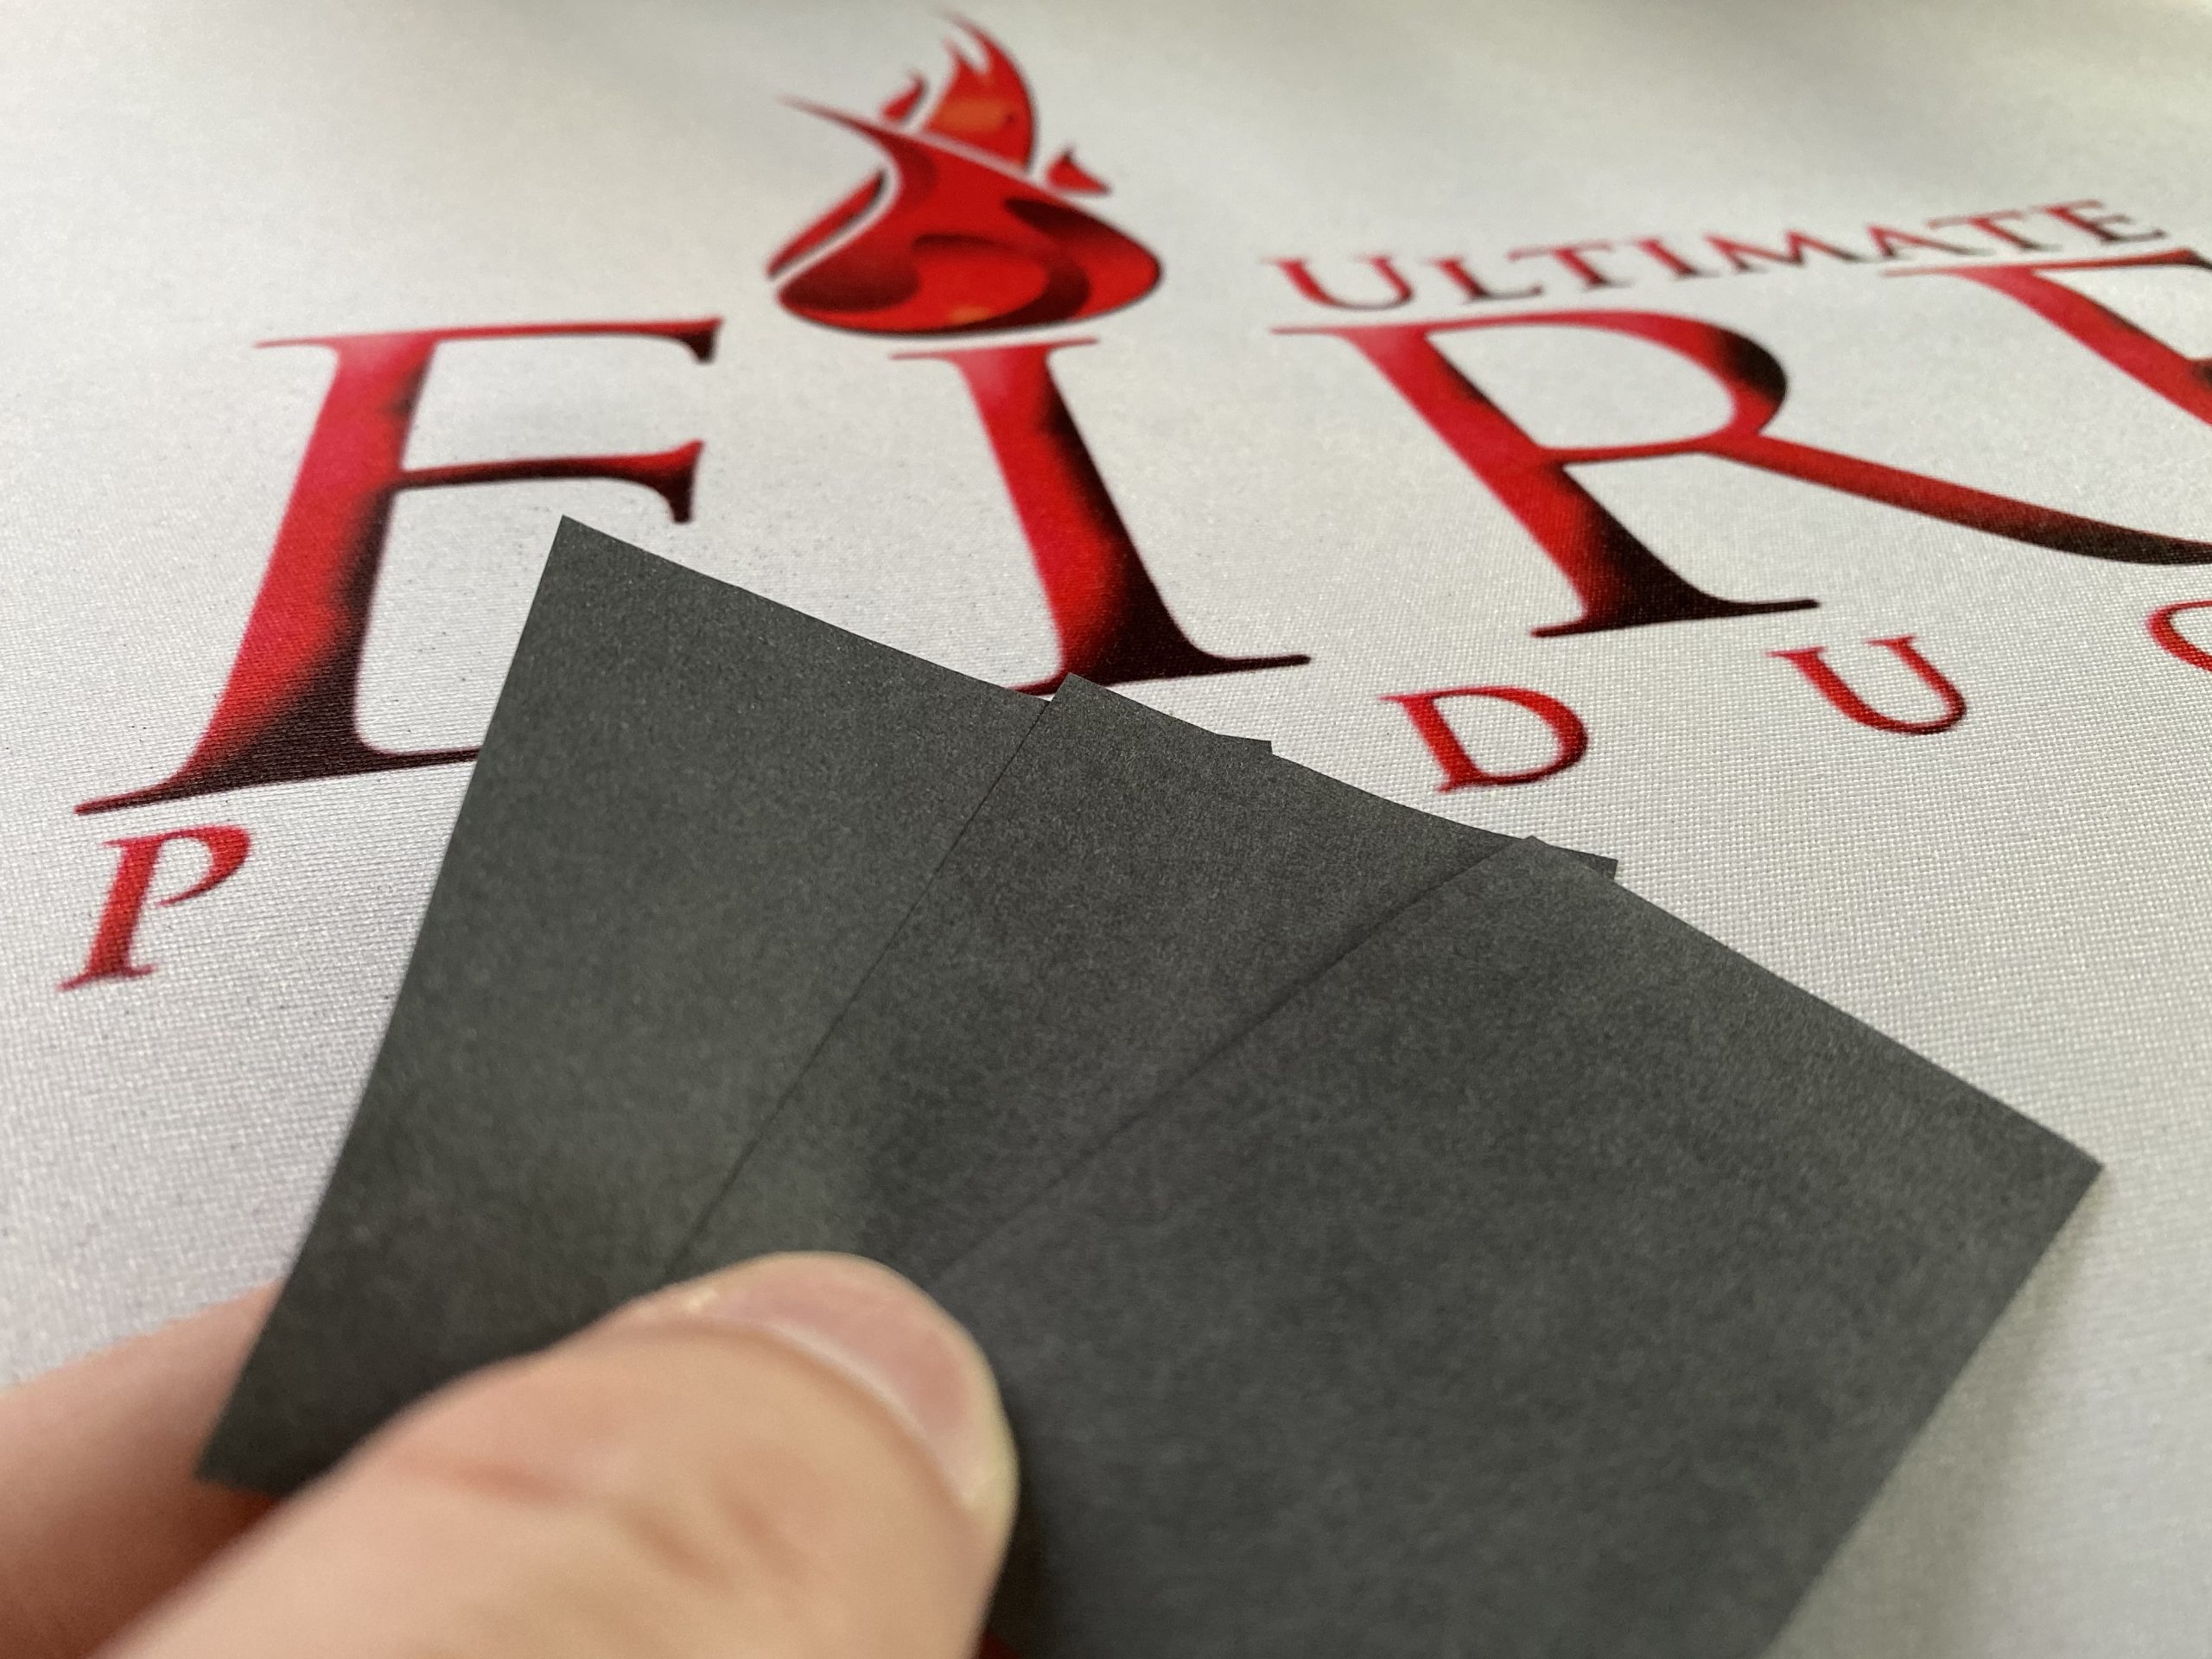 Papier Flash Noir – Ultimate Fire Products